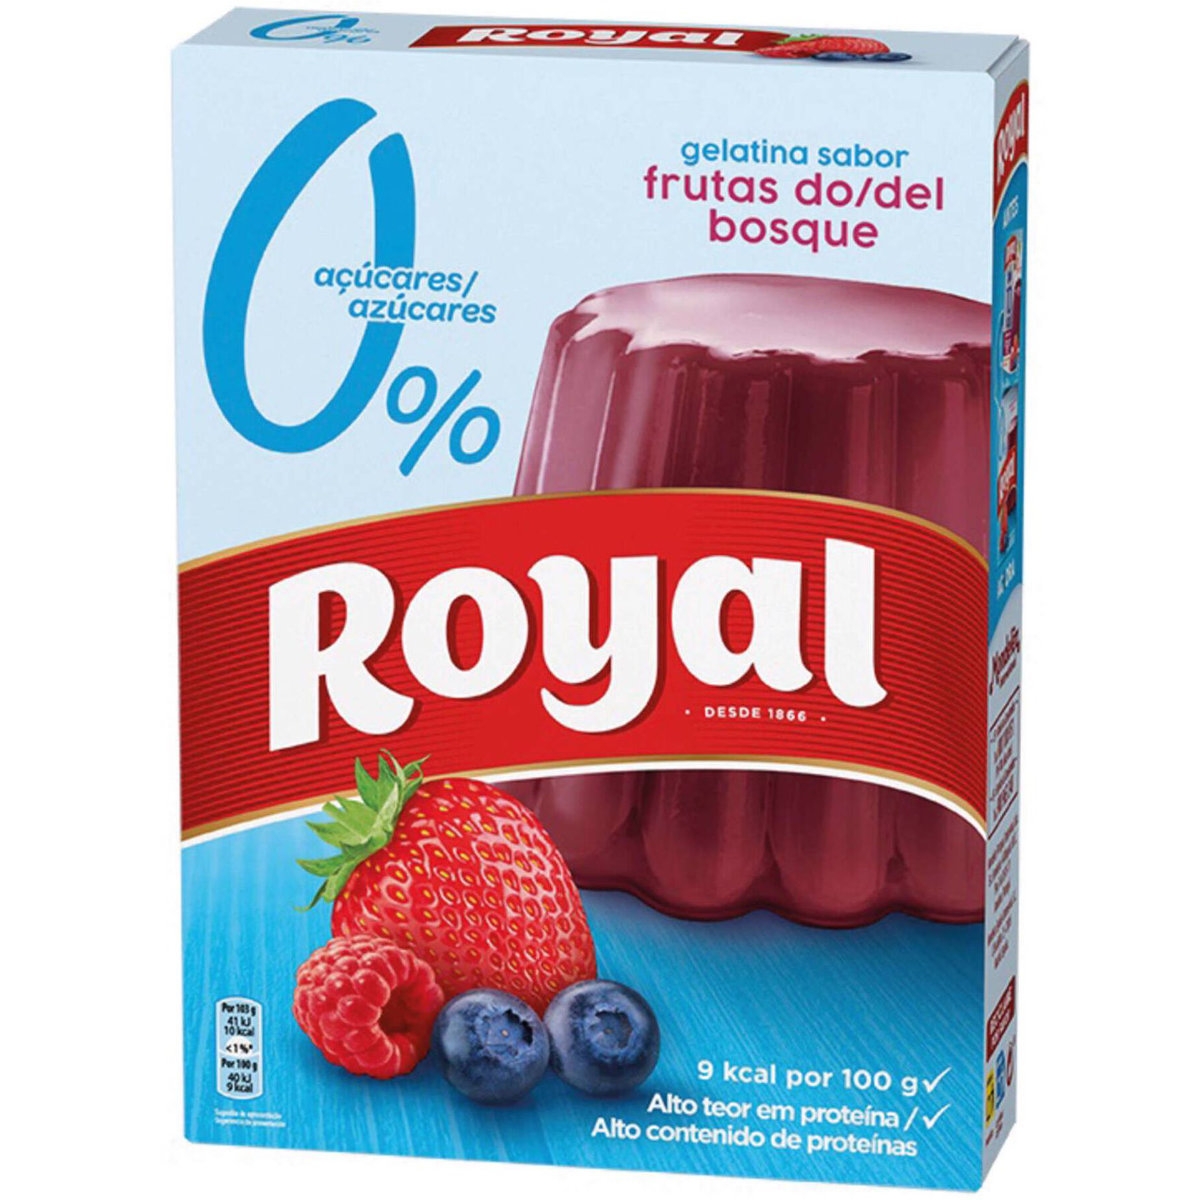 Royal gelatina sabor frutas do bosque 0% acucares – gélatine au goût des fruits de bois sans sucre – 31g